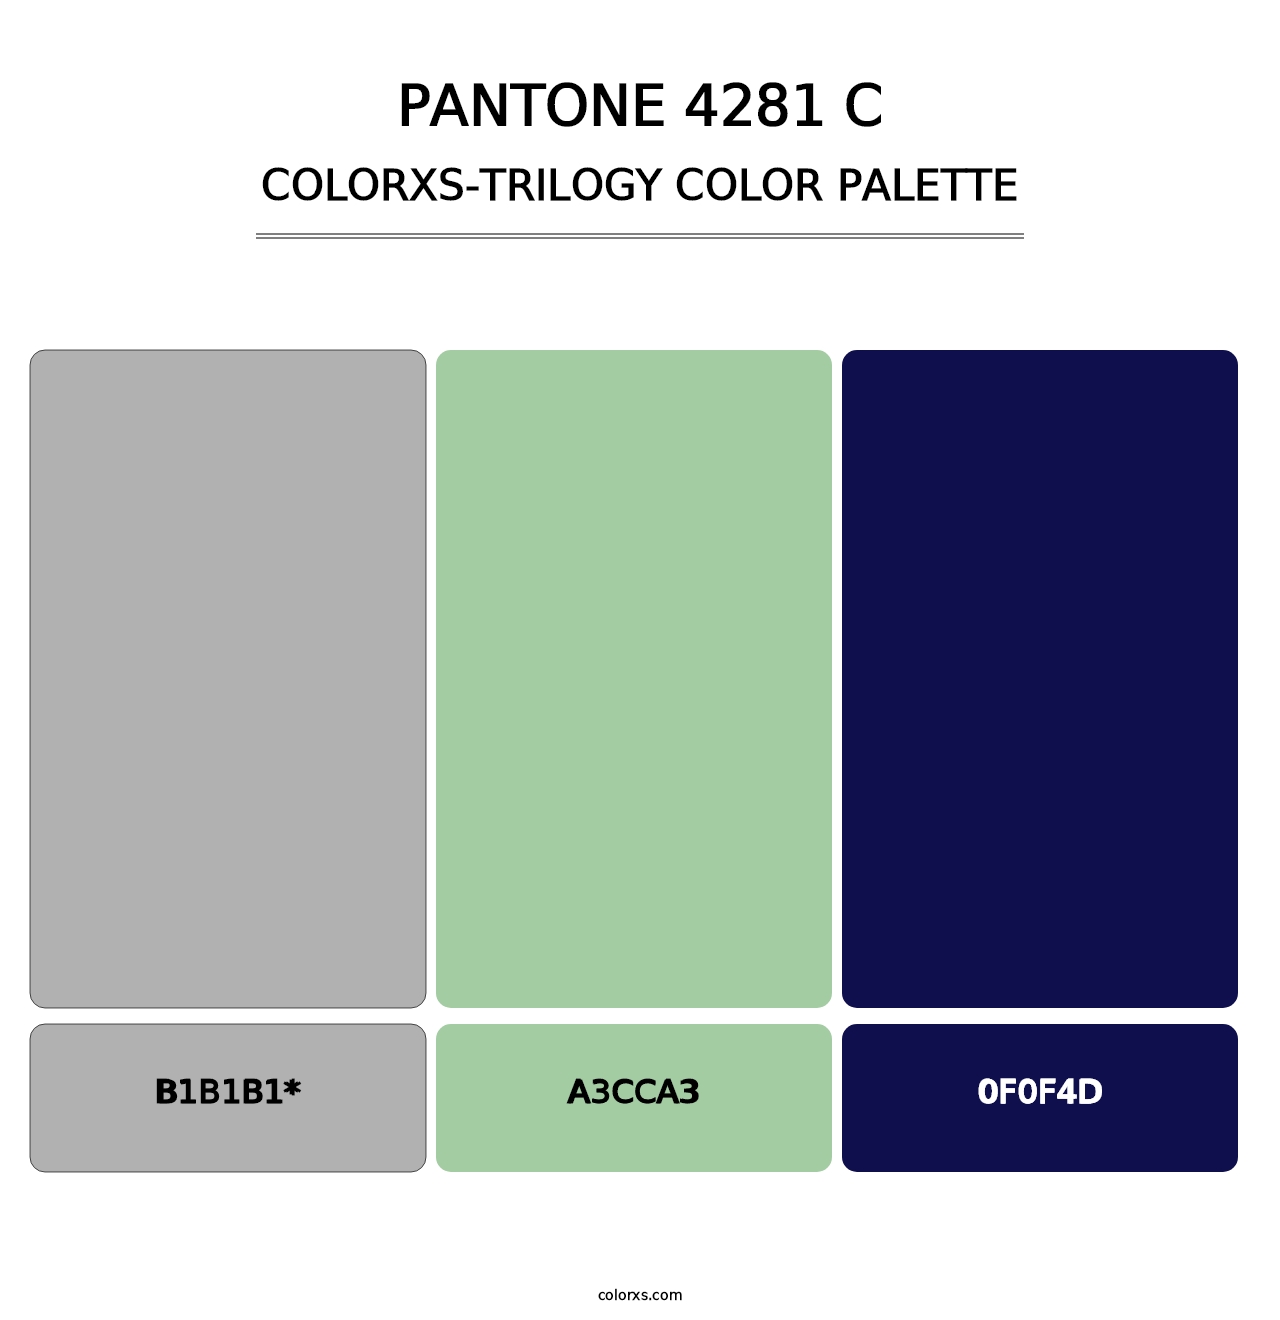 PANTONE 4281 C - Colorxs Trilogy Palette